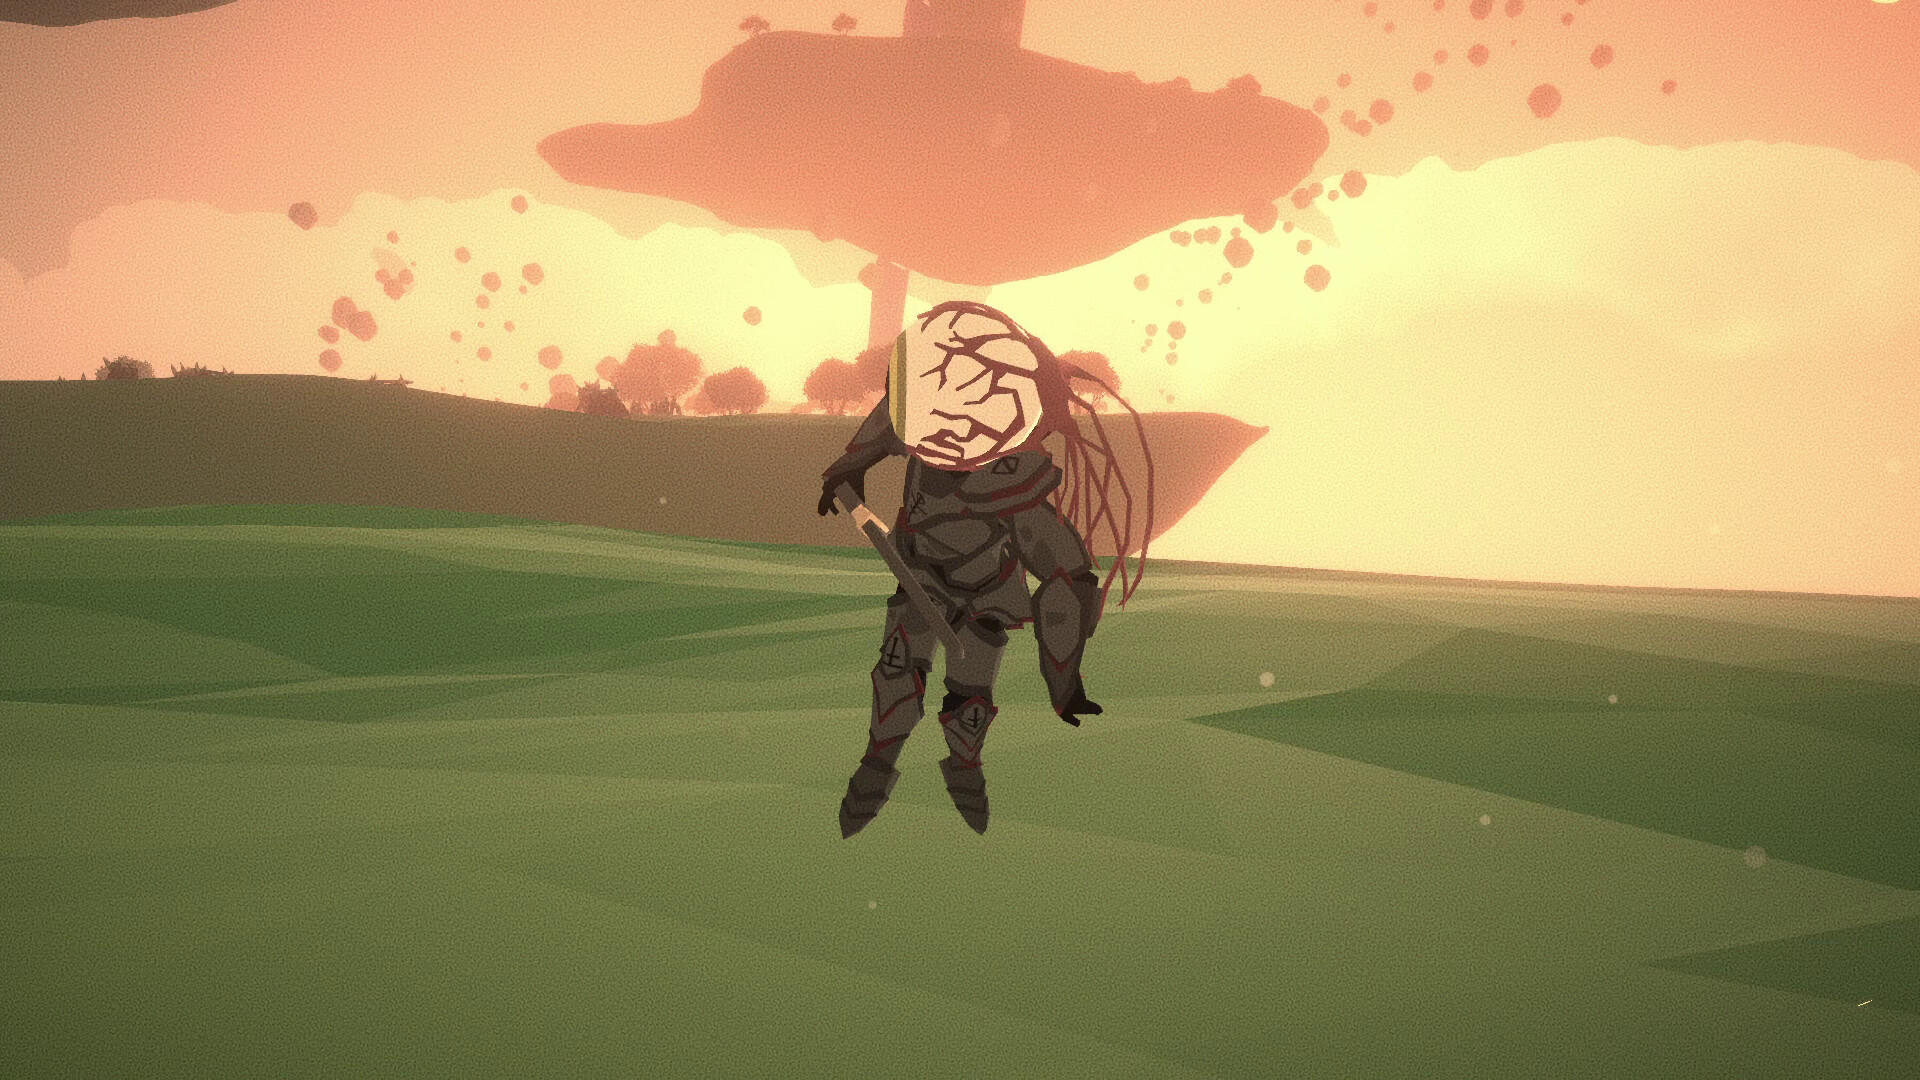 Eyewinder screenshot game